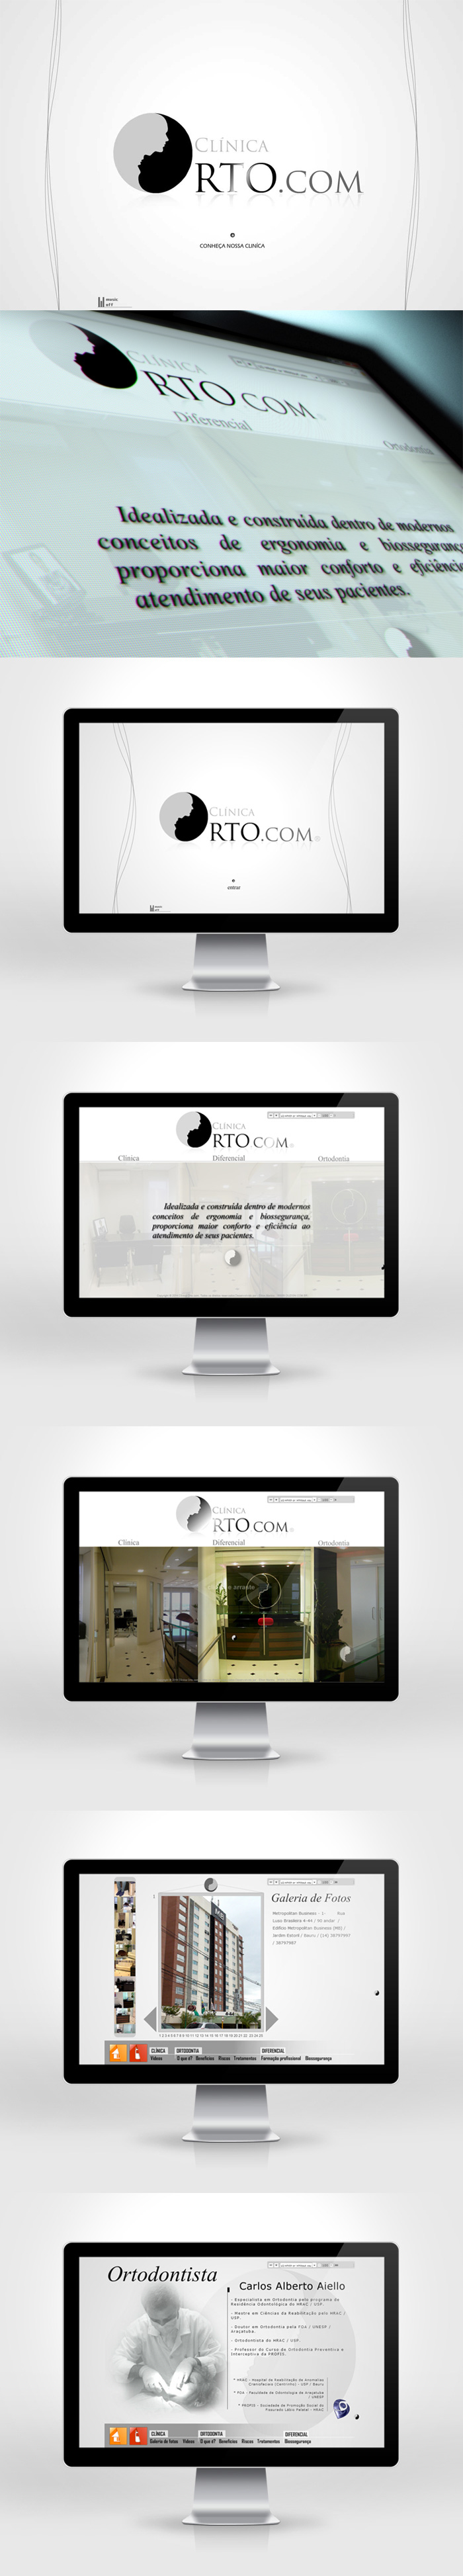 Site Institucional da Clínica Orto.com